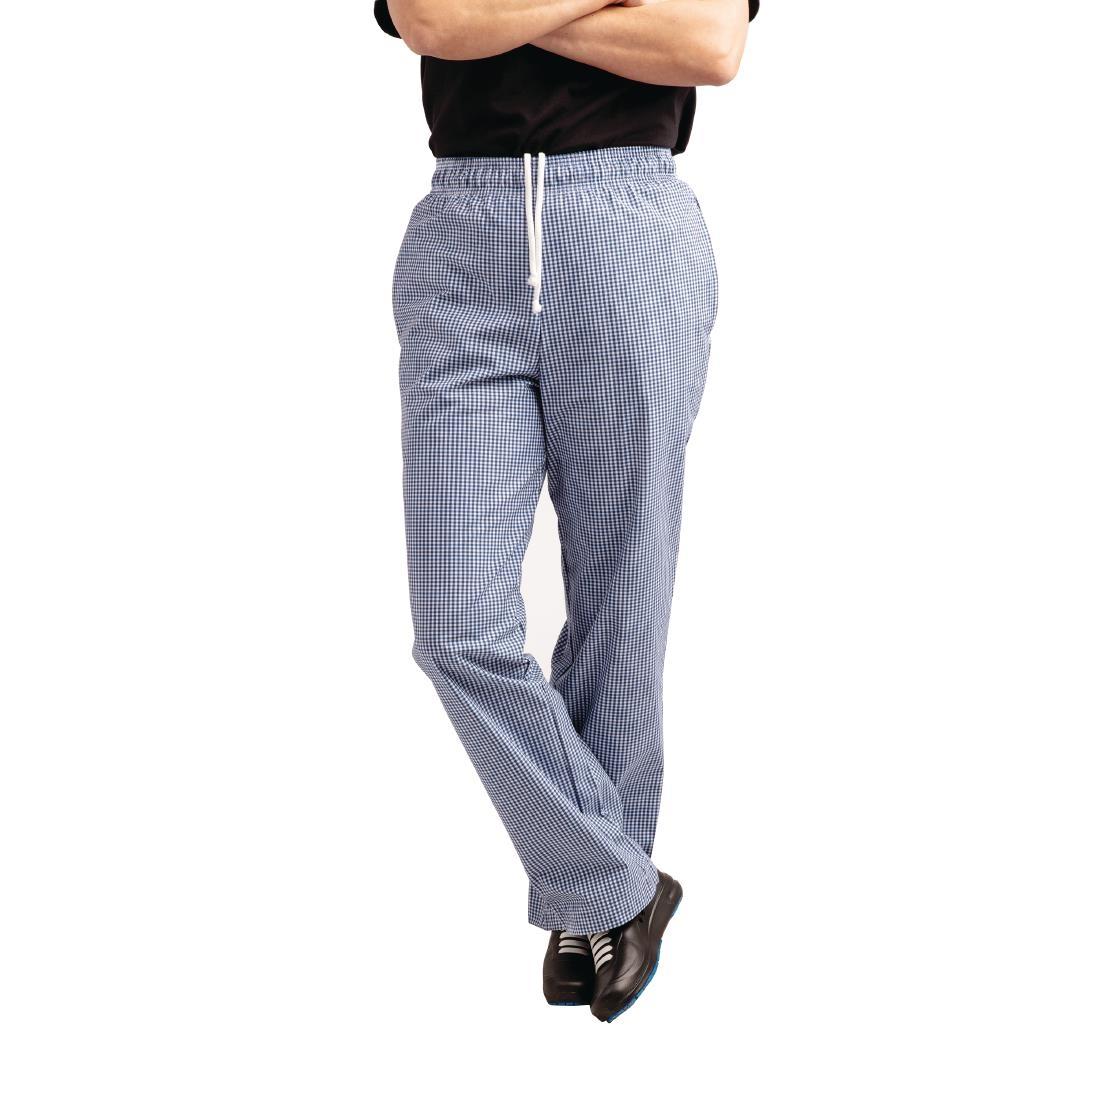 Whites Easyfit Trousers Teflon Blue Check S - A025T-S  - 7